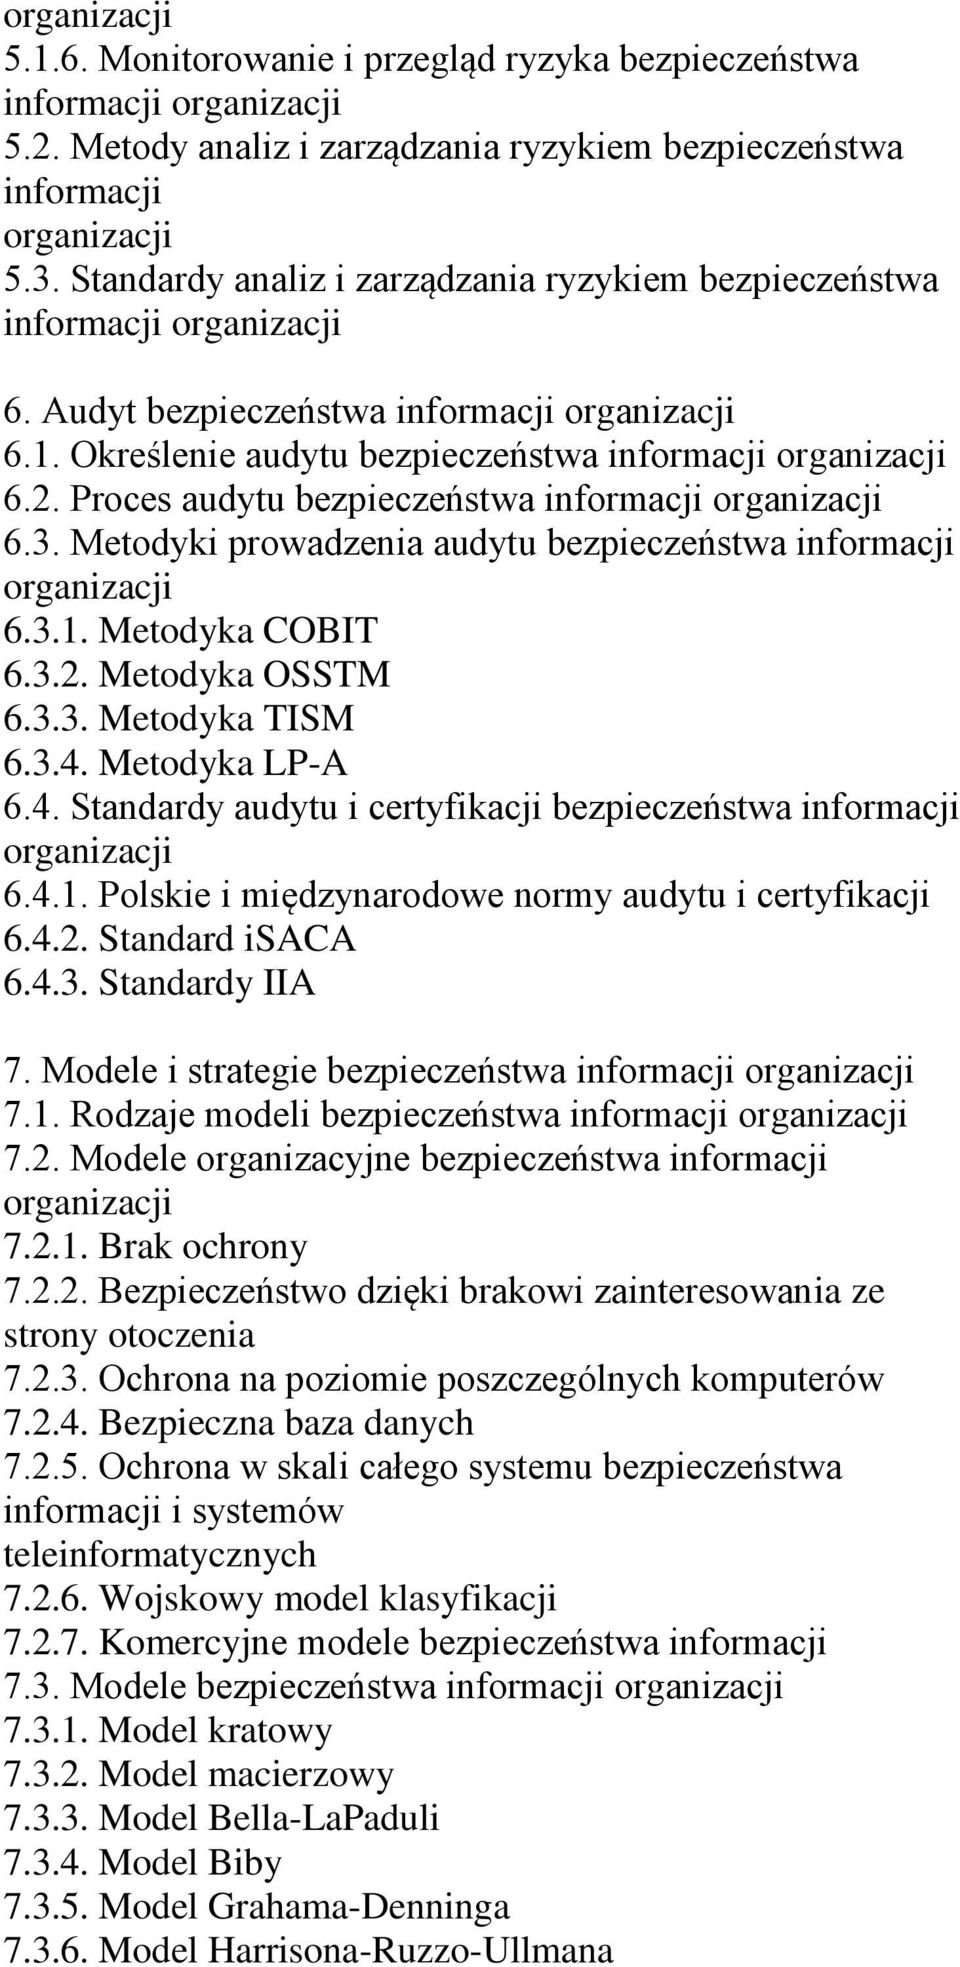 Metodyka LP-A 6.4. Standardy audytu i certyfikacji bezpieczeństwa 6.4.1. Polskie i międzynarodowe normy audytu i certyfikacji 6.4.2. Standard isaca 6.4.3. Standardy IIA 7.